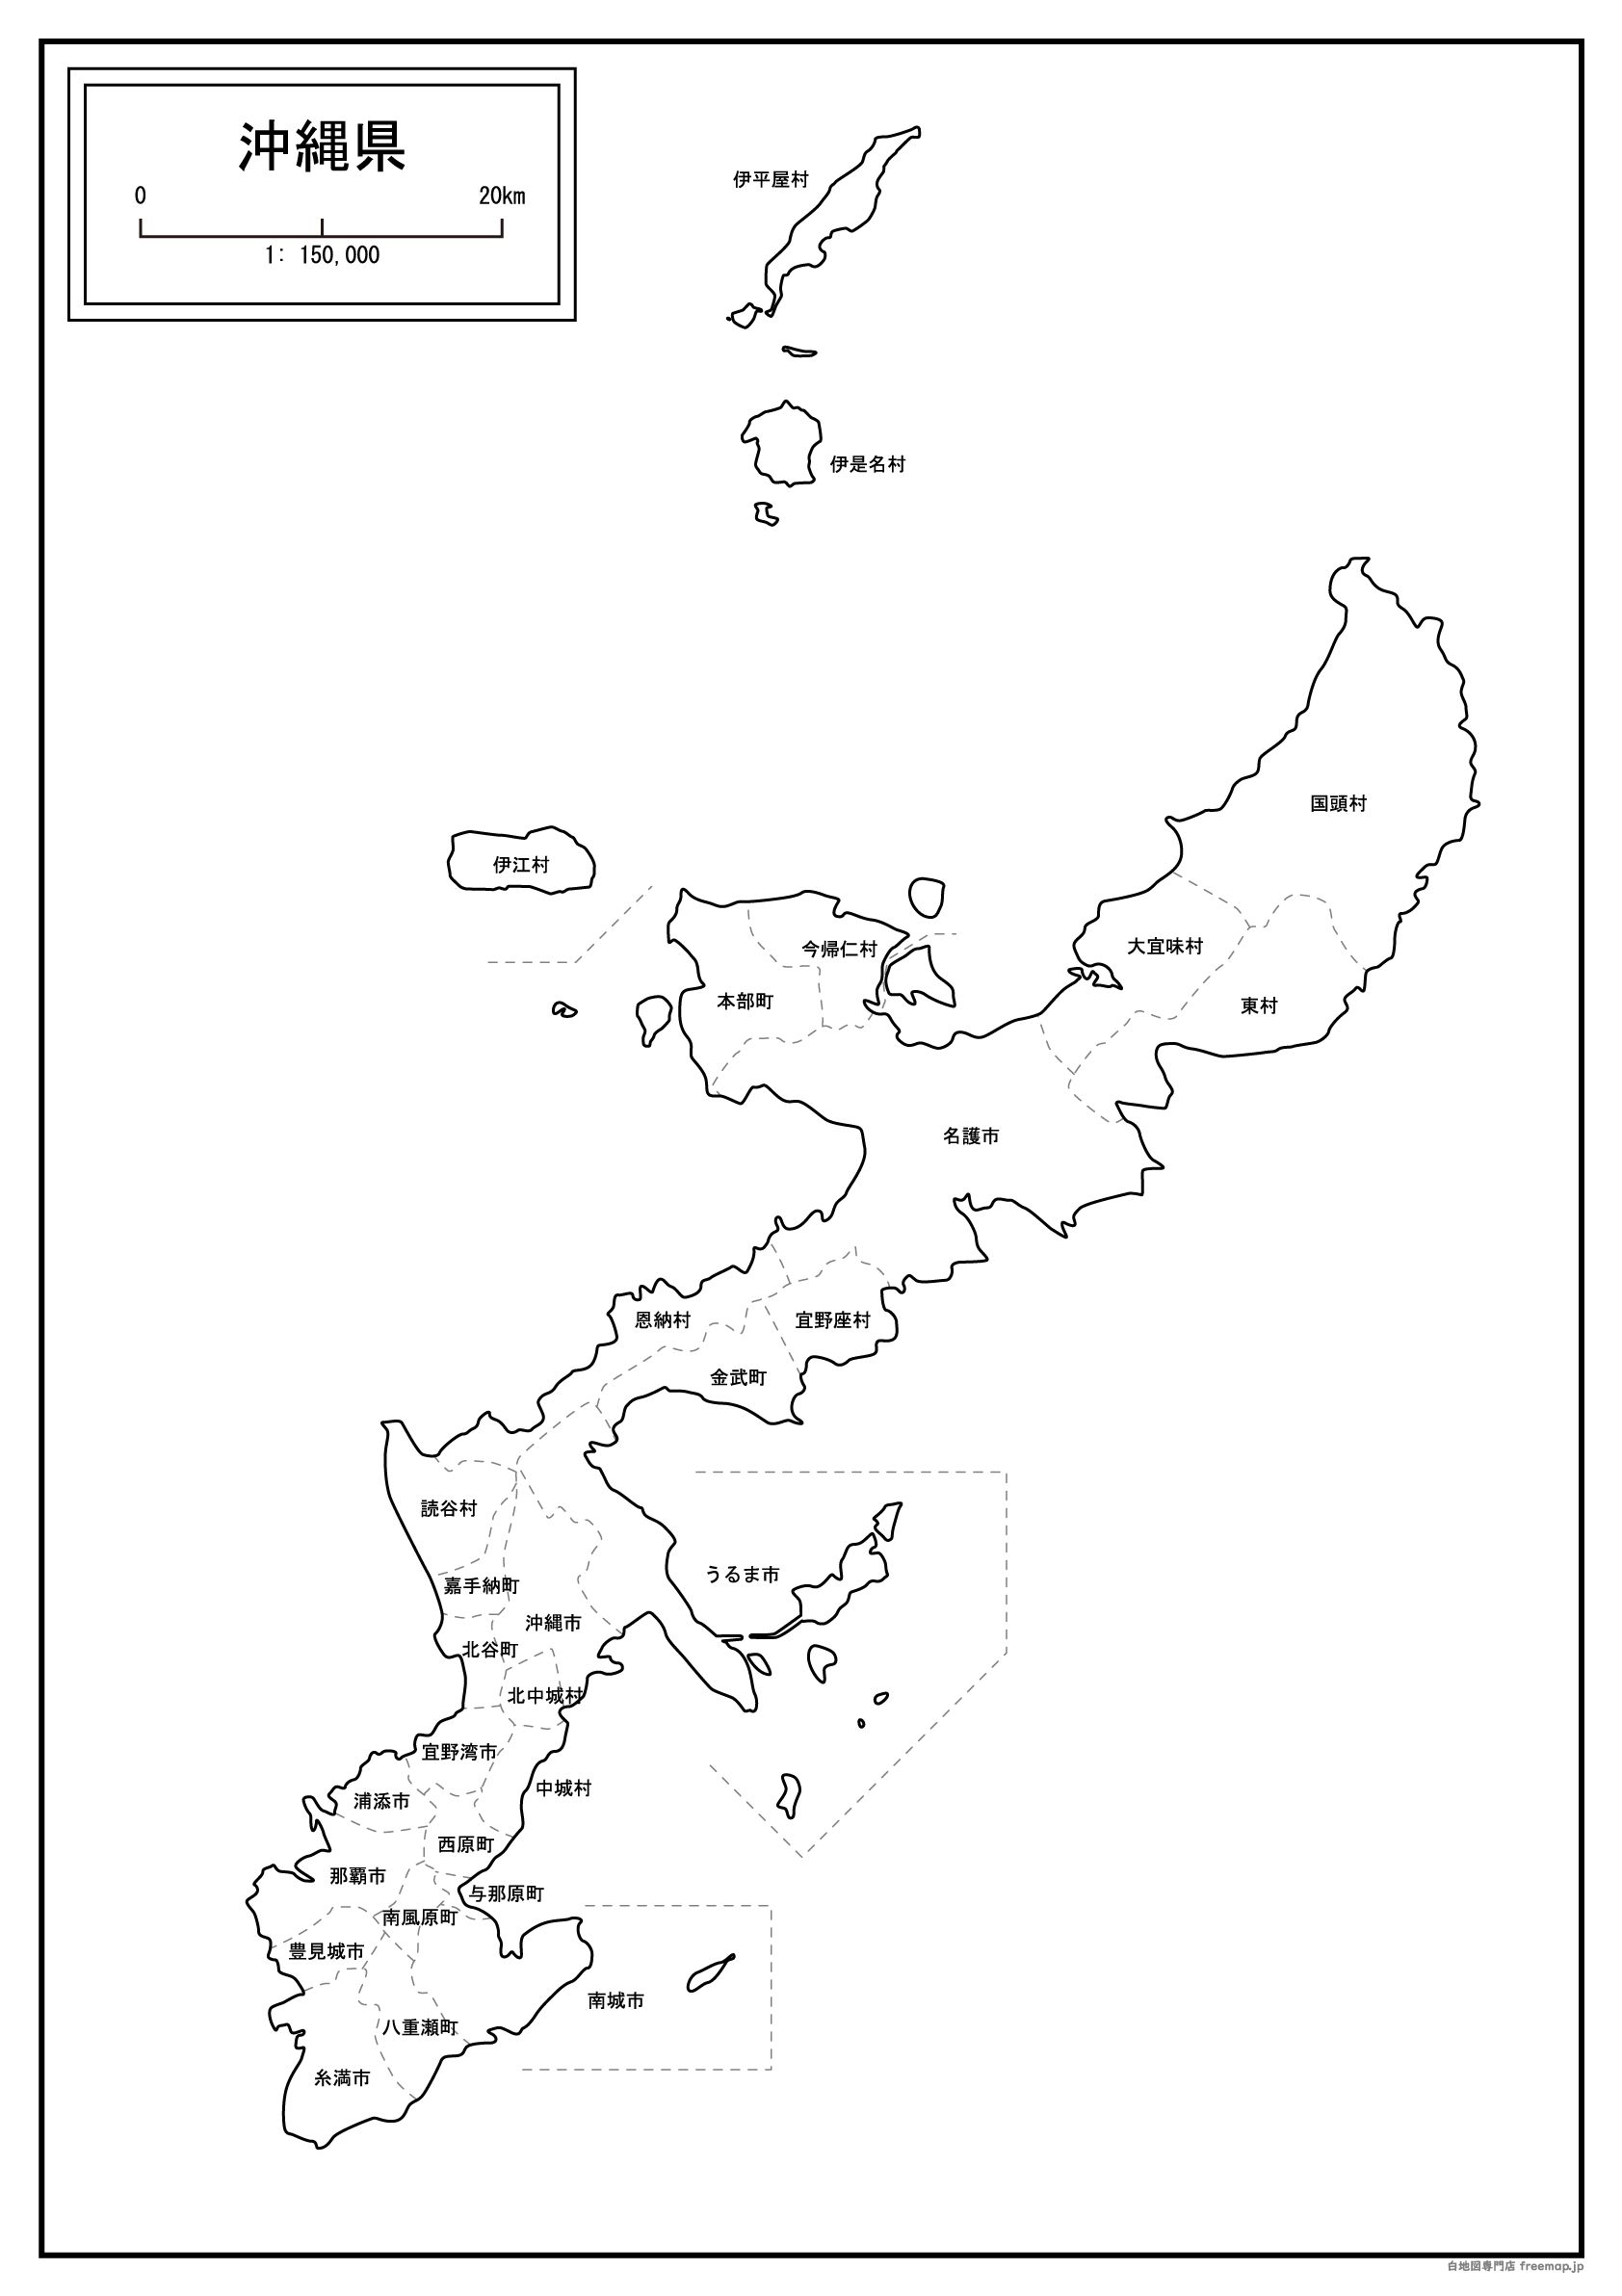 沖縄県本島周辺図の白地図を無料ダウンロード 白地図専門店